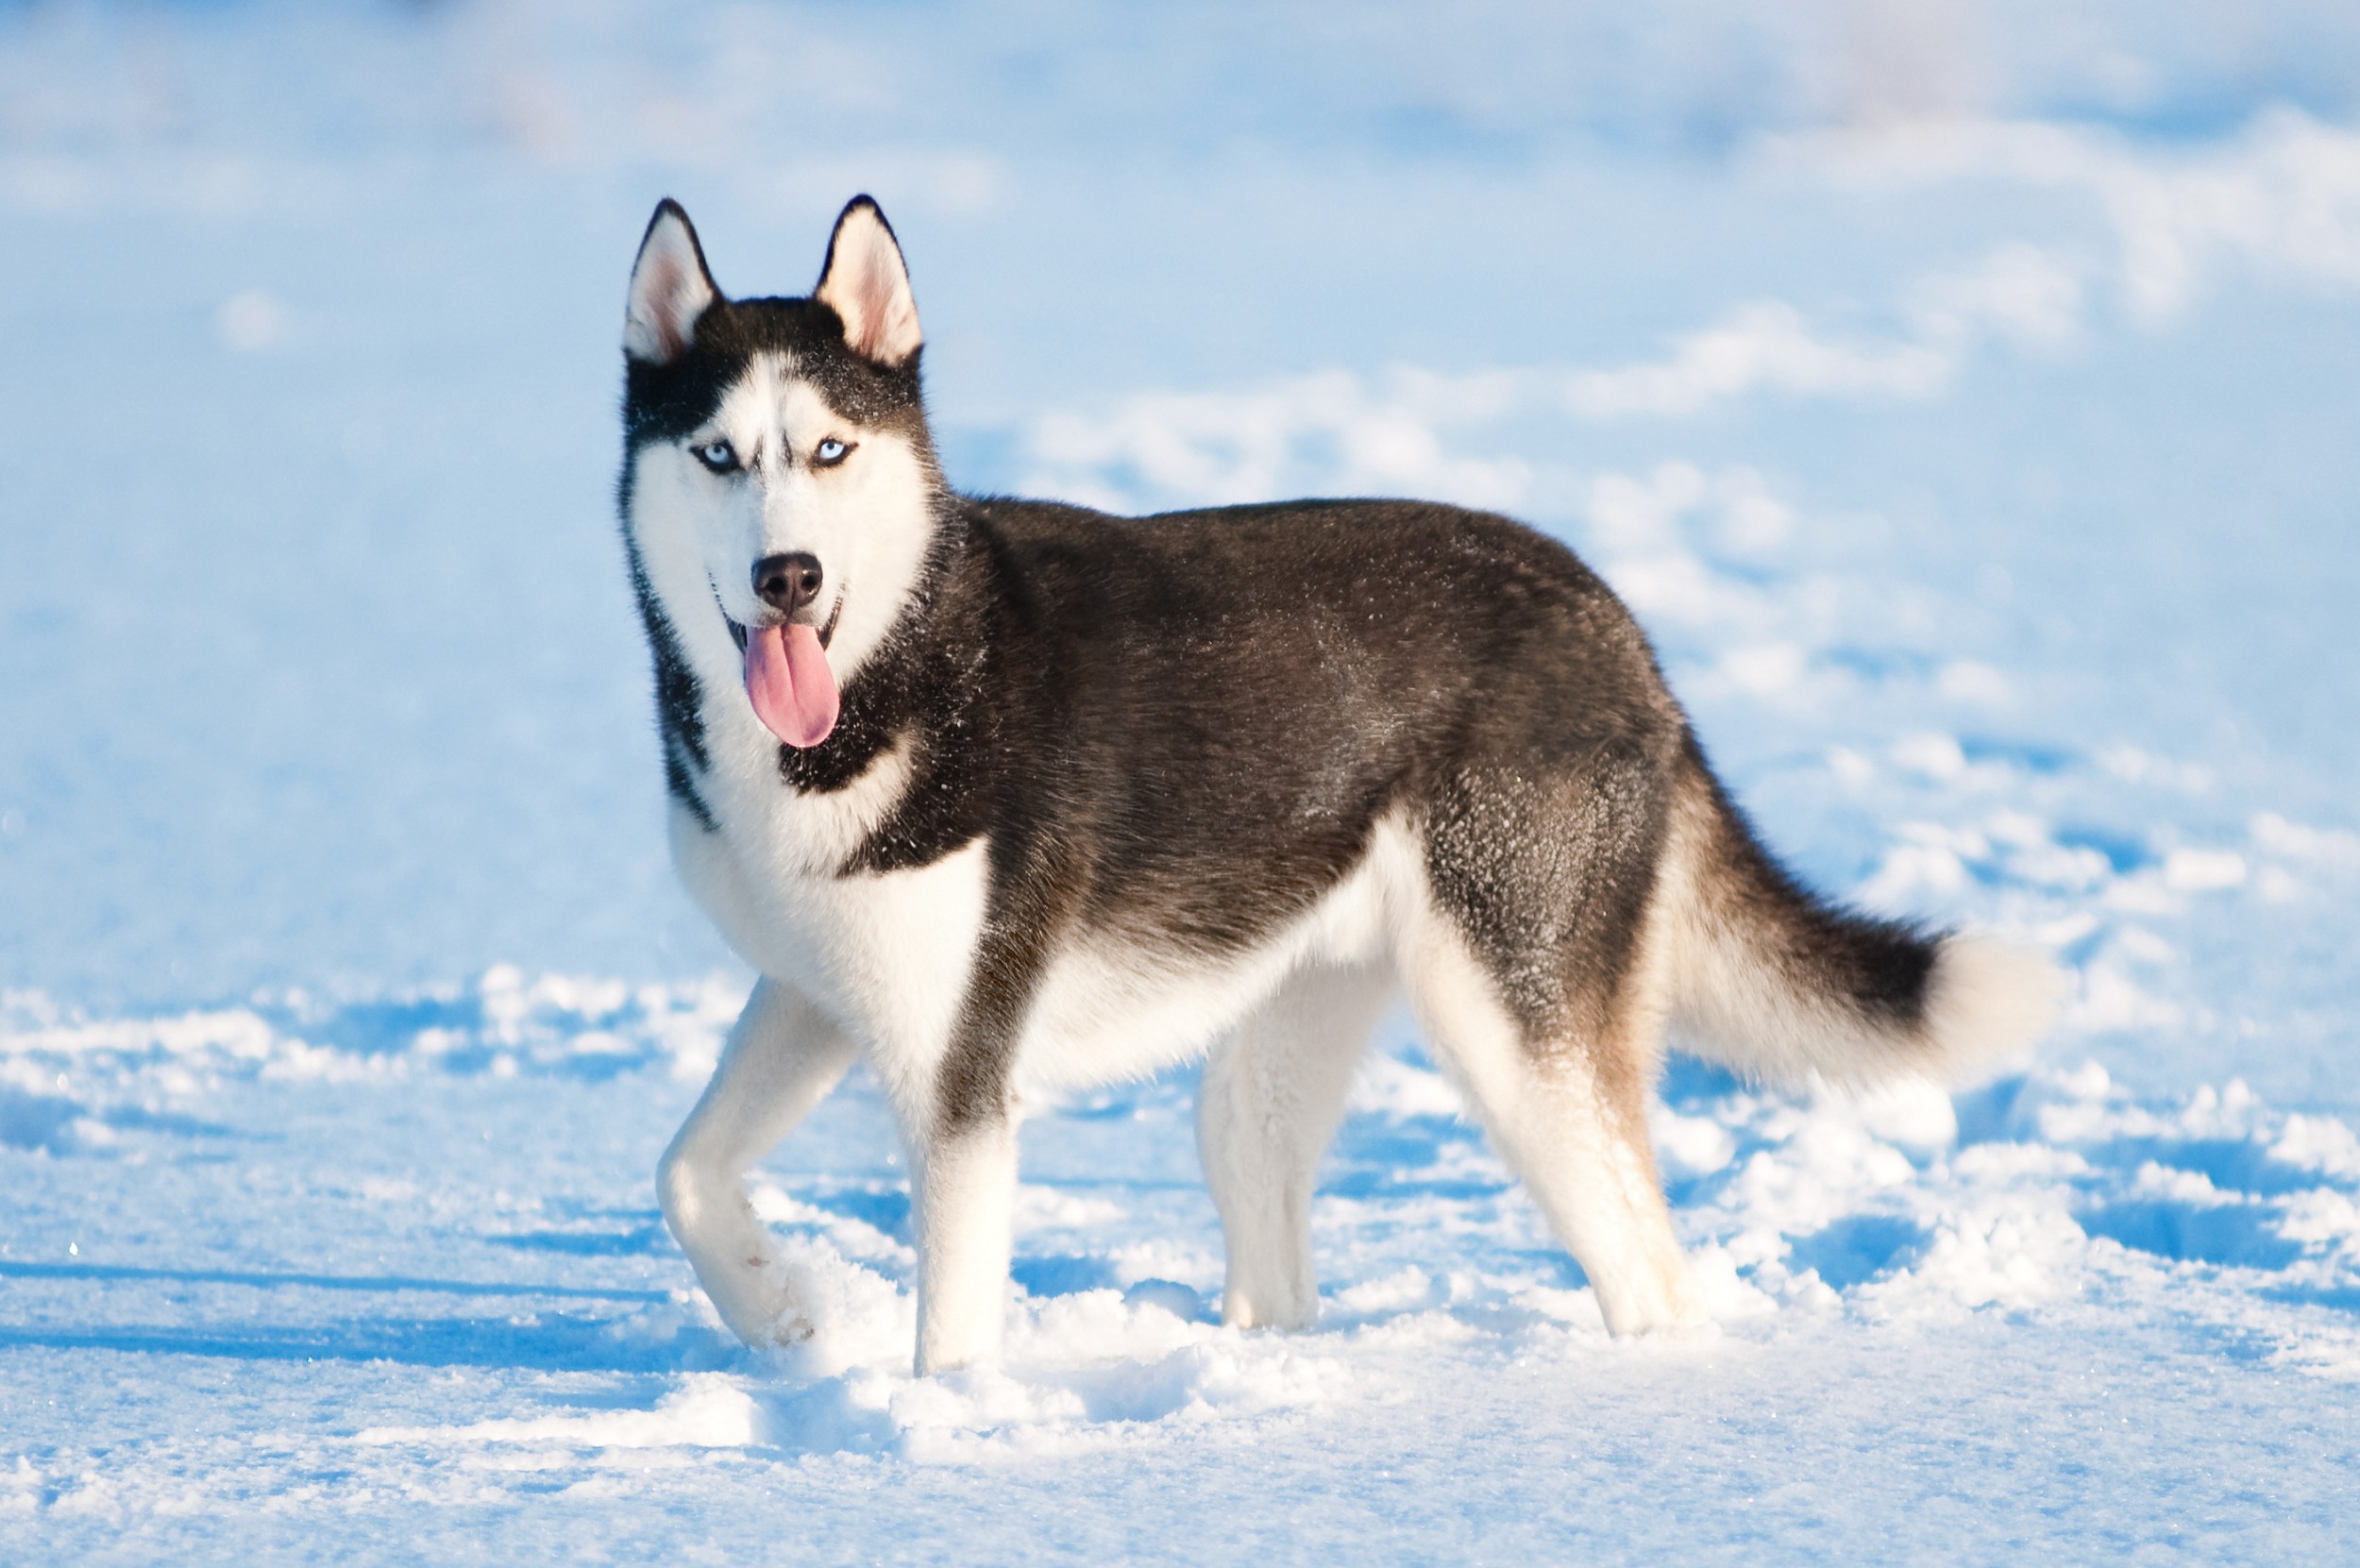 Este lindo Husky Siberiano está na neve como seus antepassados